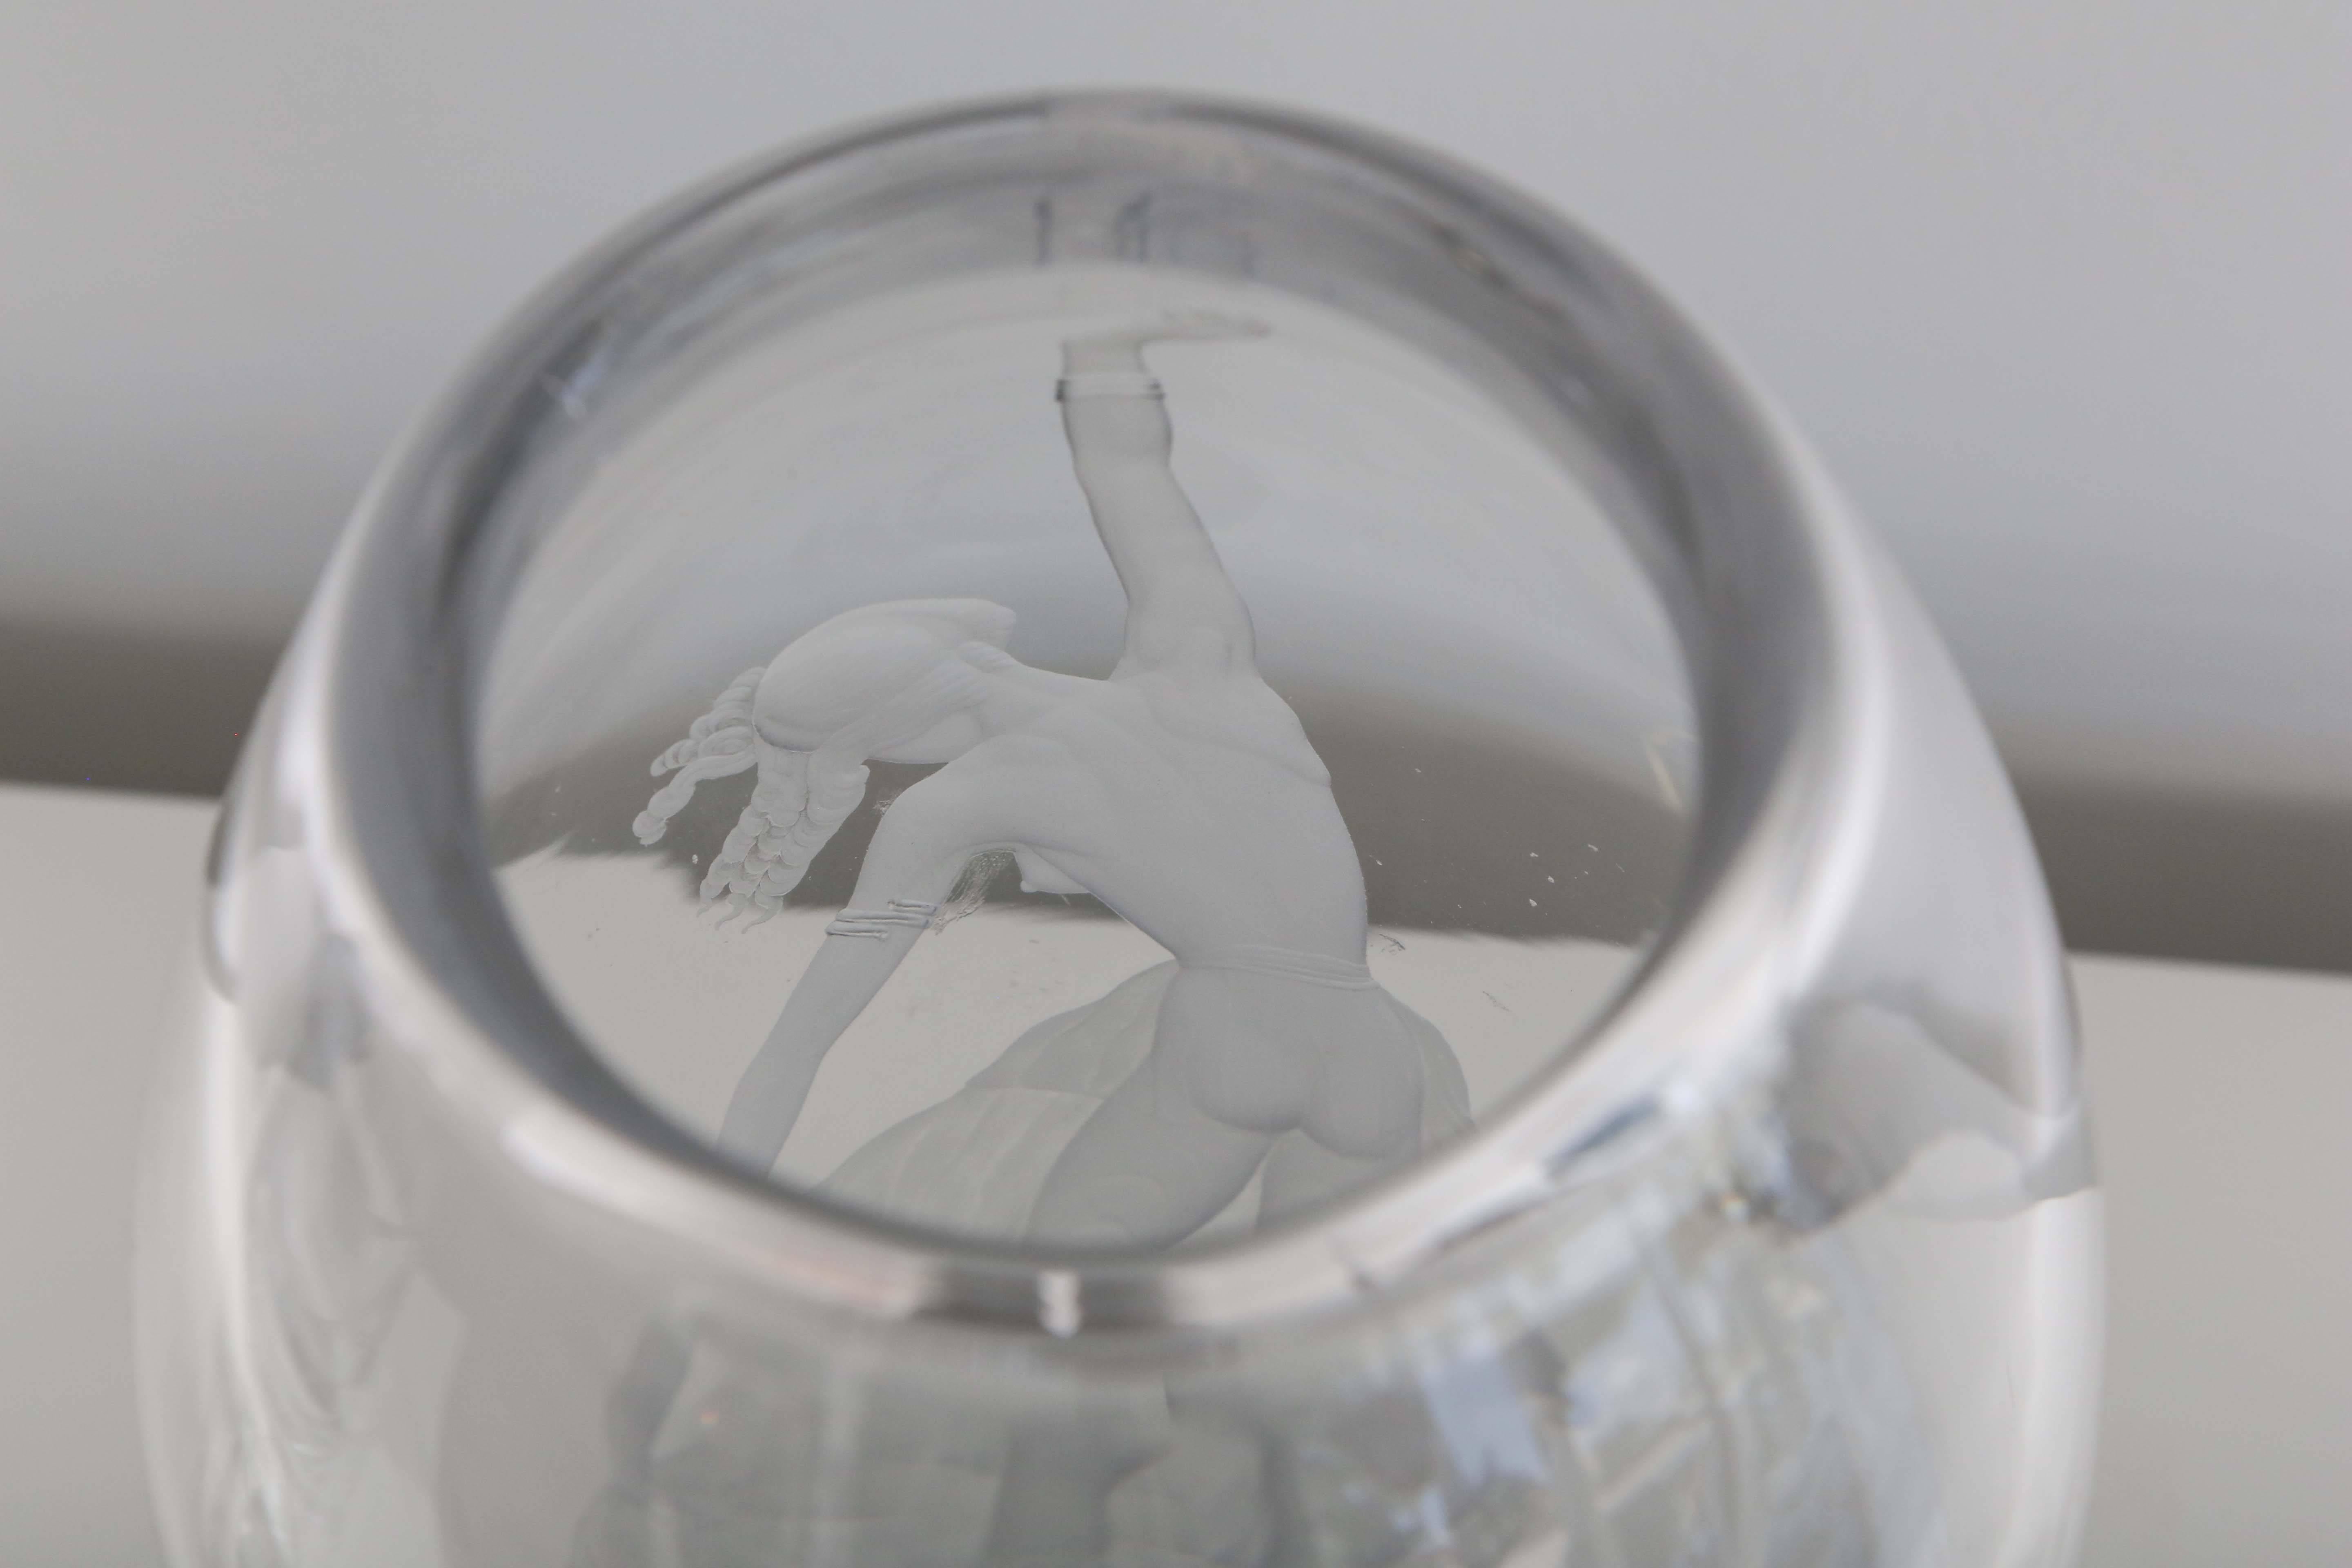 Rare Orrefors glass vase with acid etched java dancer in motion.